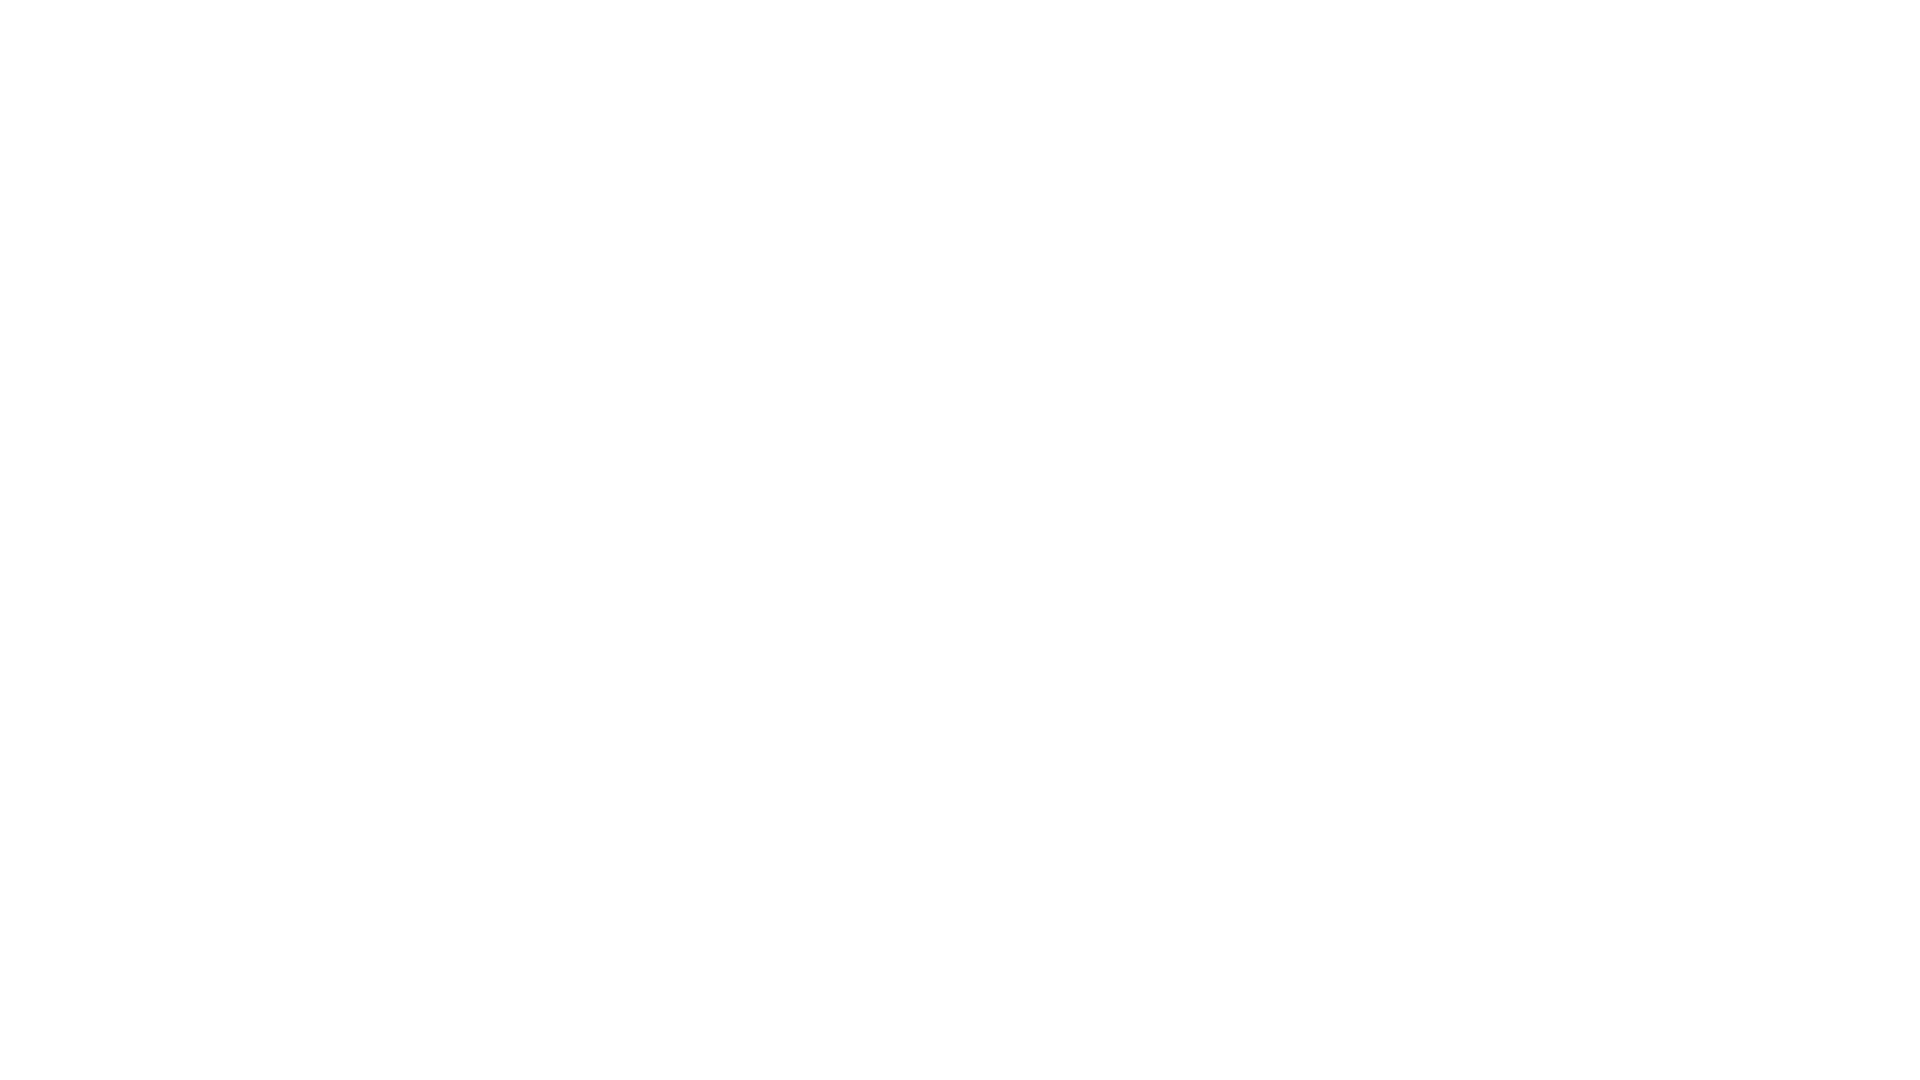 FBP Advice